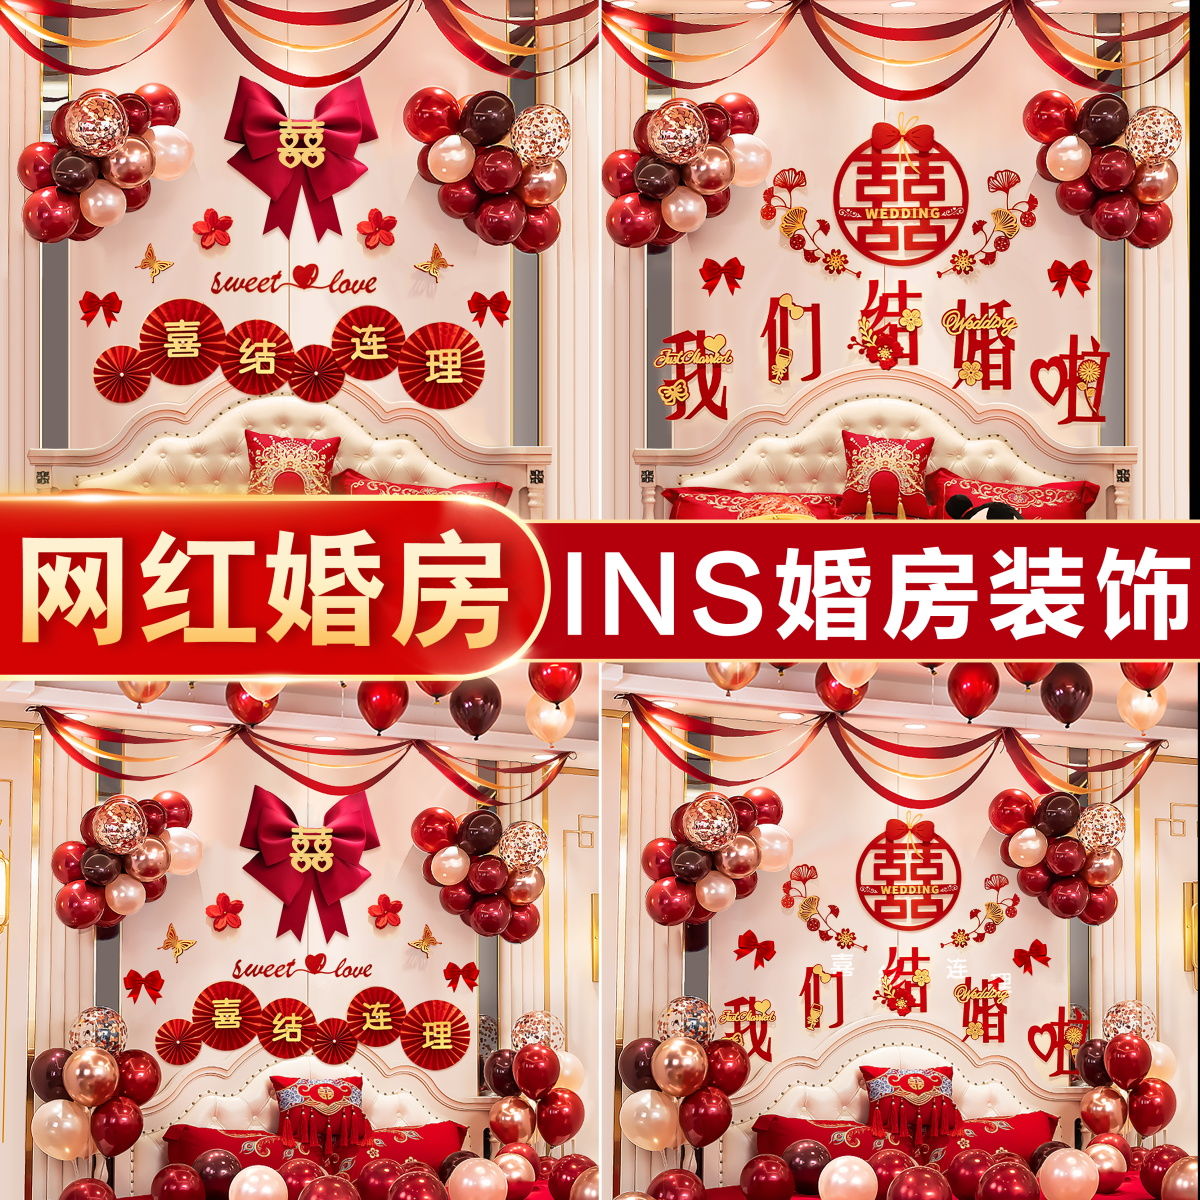 【包邮】INS网红婚房场景布置气球装饰套装